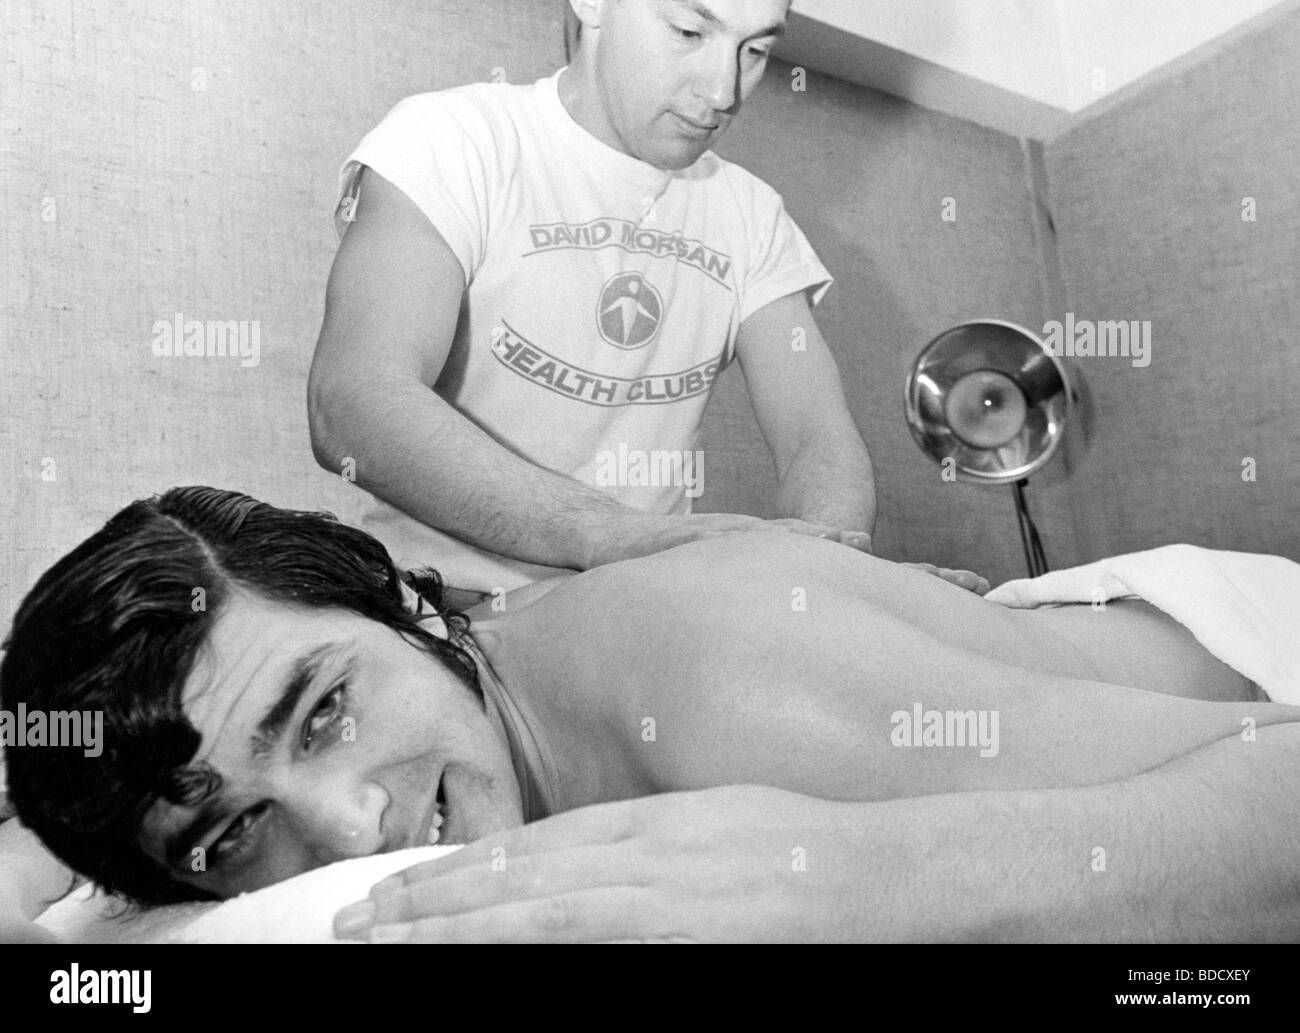 Engelbert HUMPERDINCK - britischer Popsänger im David Morgan Health Club in London im Jahr 1967. Foto: Tony Gale Stockfoto